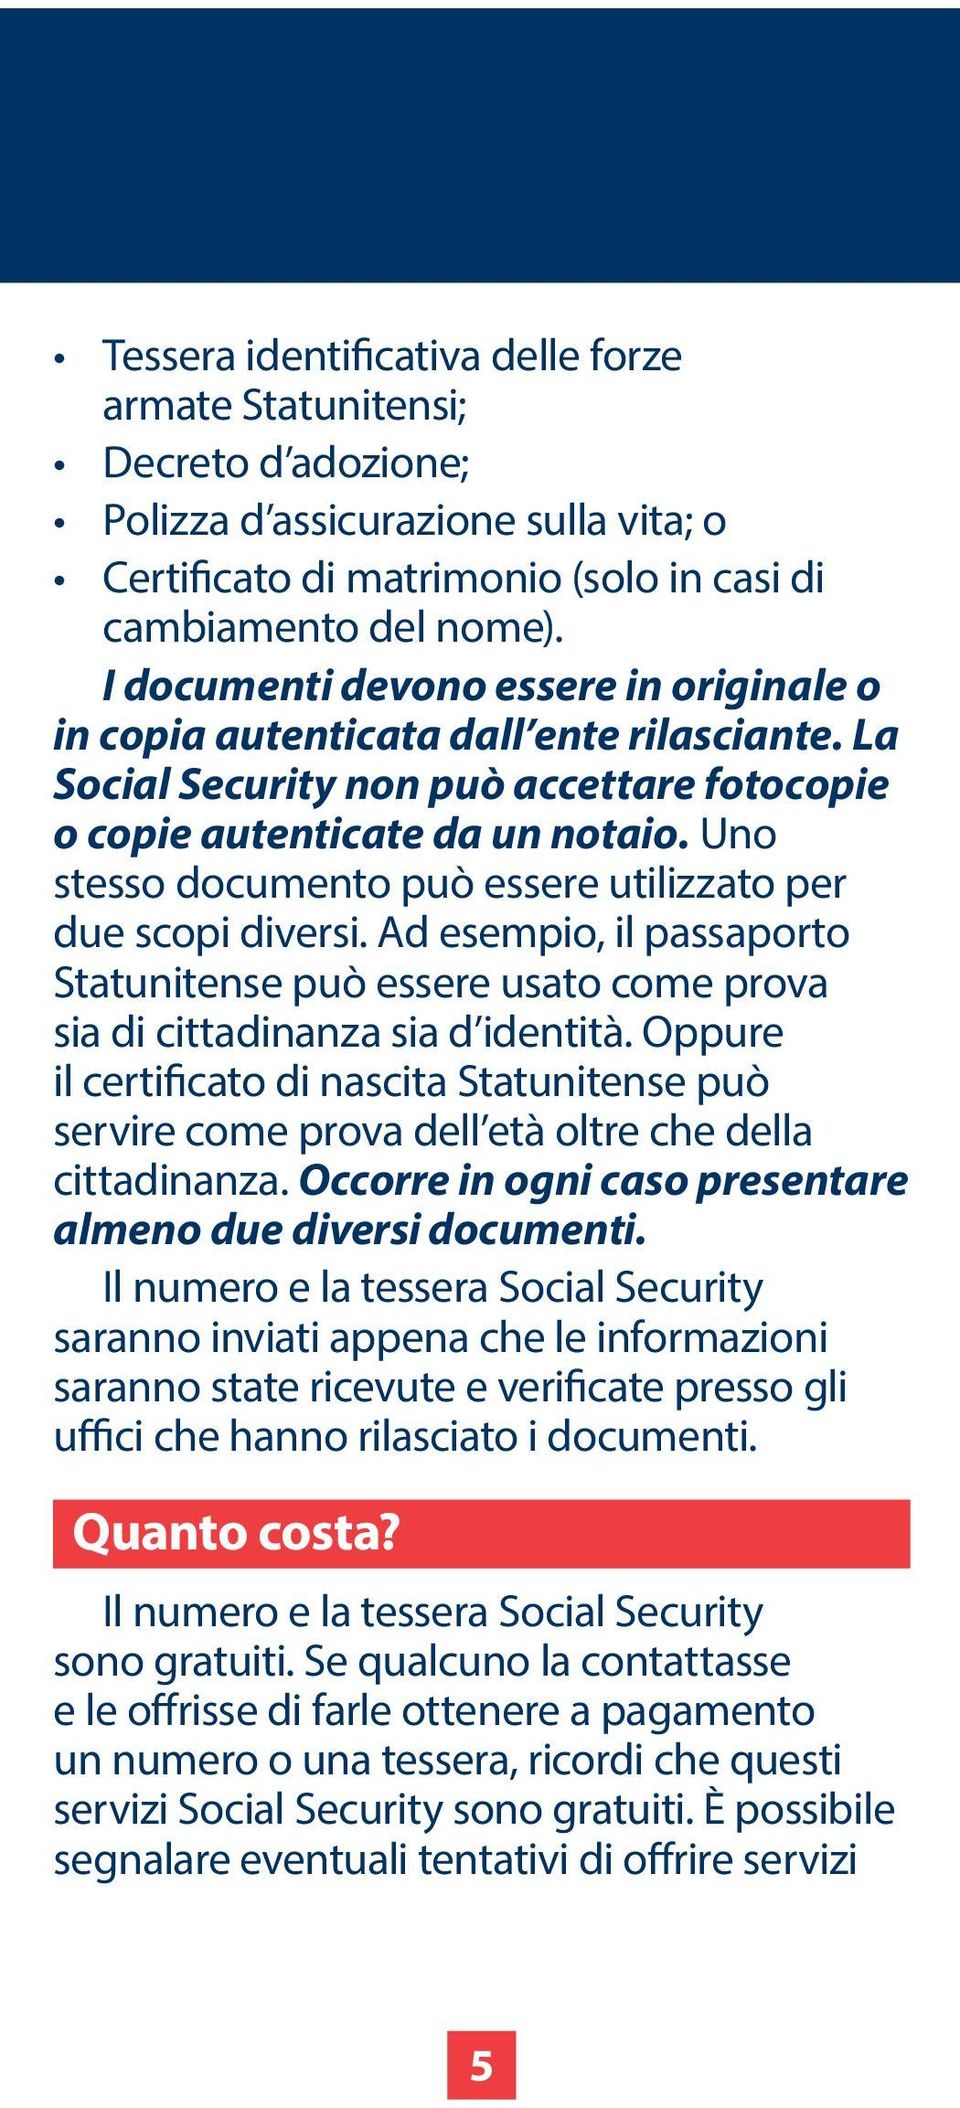 Uno stesso documento può essere utilizzato per due scopi diversi. Ad esempio, il passaporto Statunitense può essere usato come prova sia di cittadinanza sia d identità.